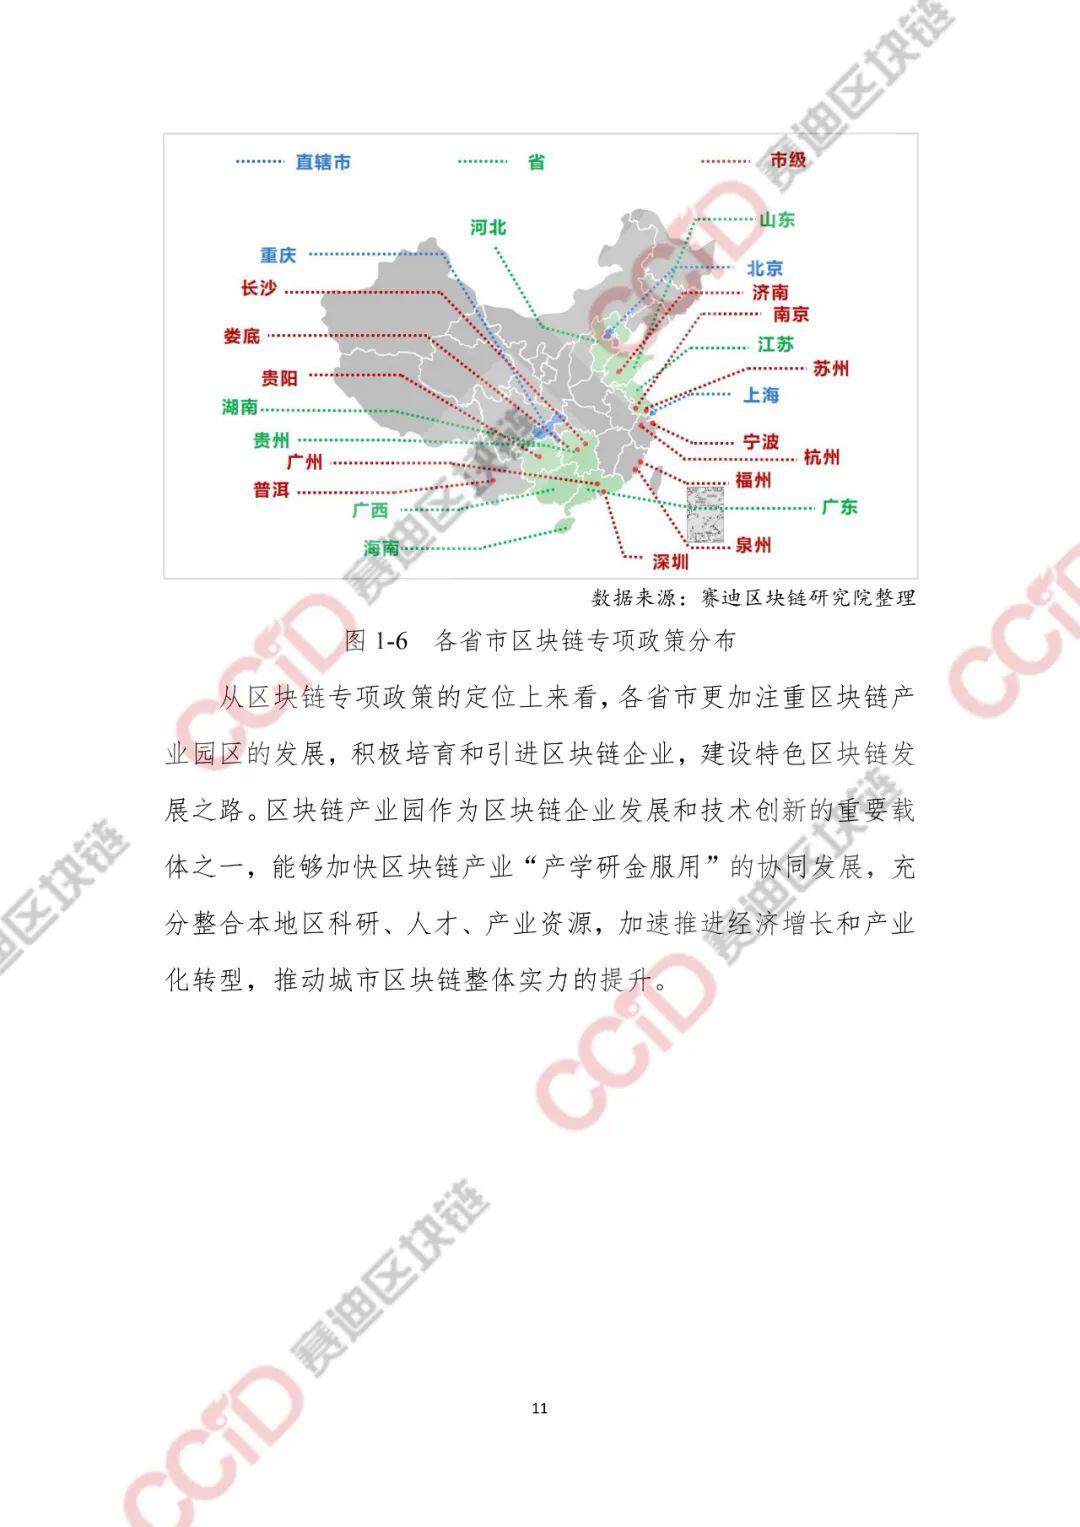 2020-2021年中国区块链产业发展白皮书